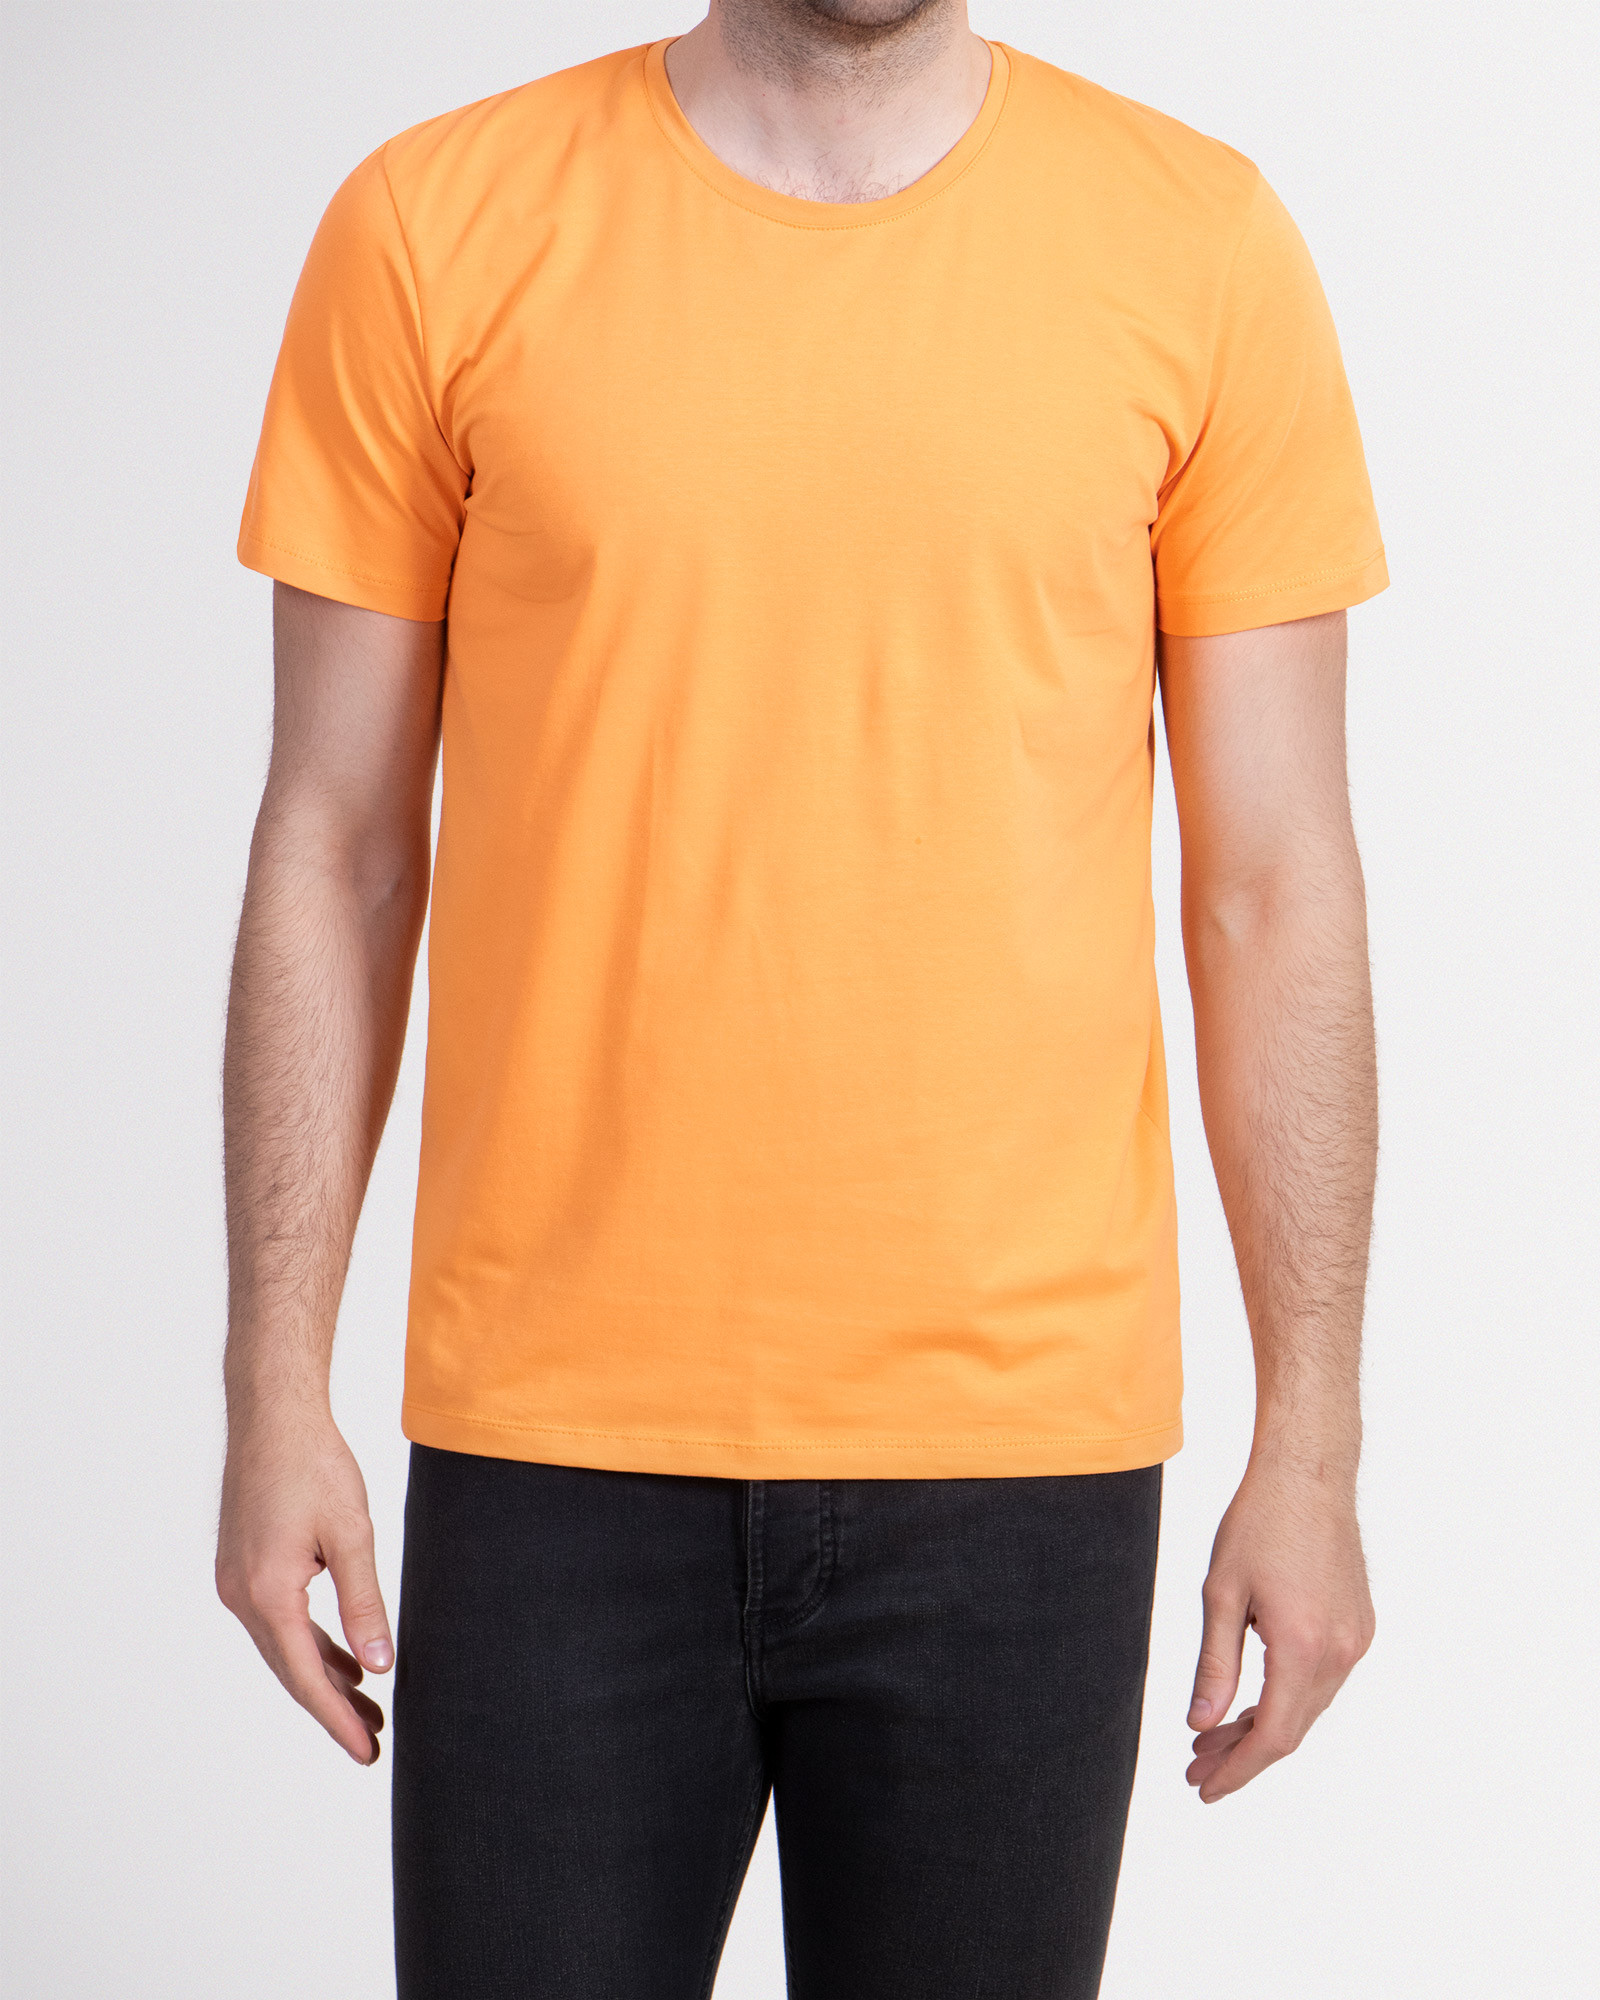 خرید اینترنتی تیشرت مردانه ساده نارنجی 19129181